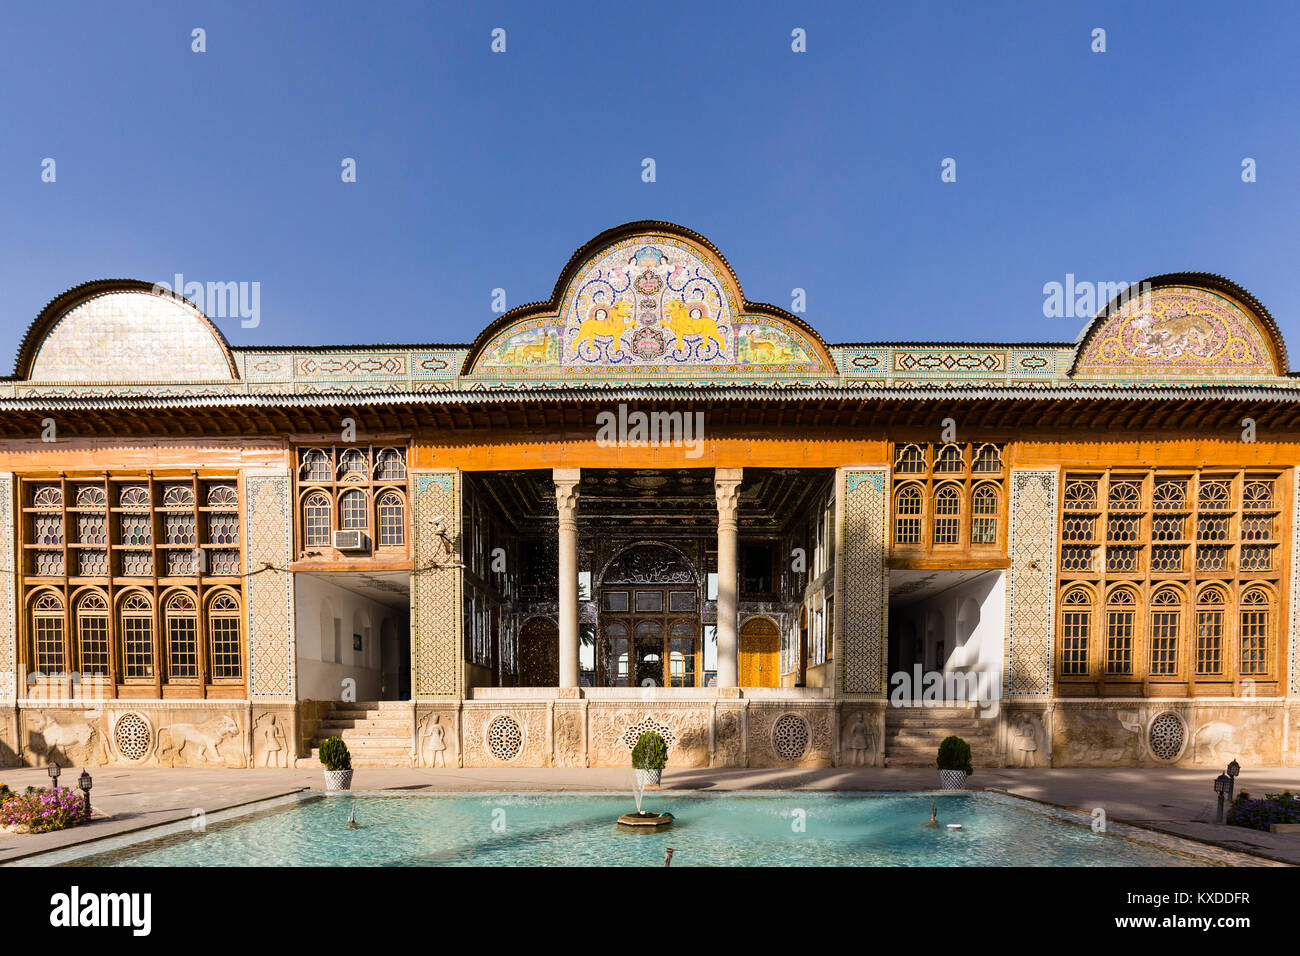 Bagh-e Eram,Eram Garden or Garden of Paradise,Shiraz,Iran Stock Photo